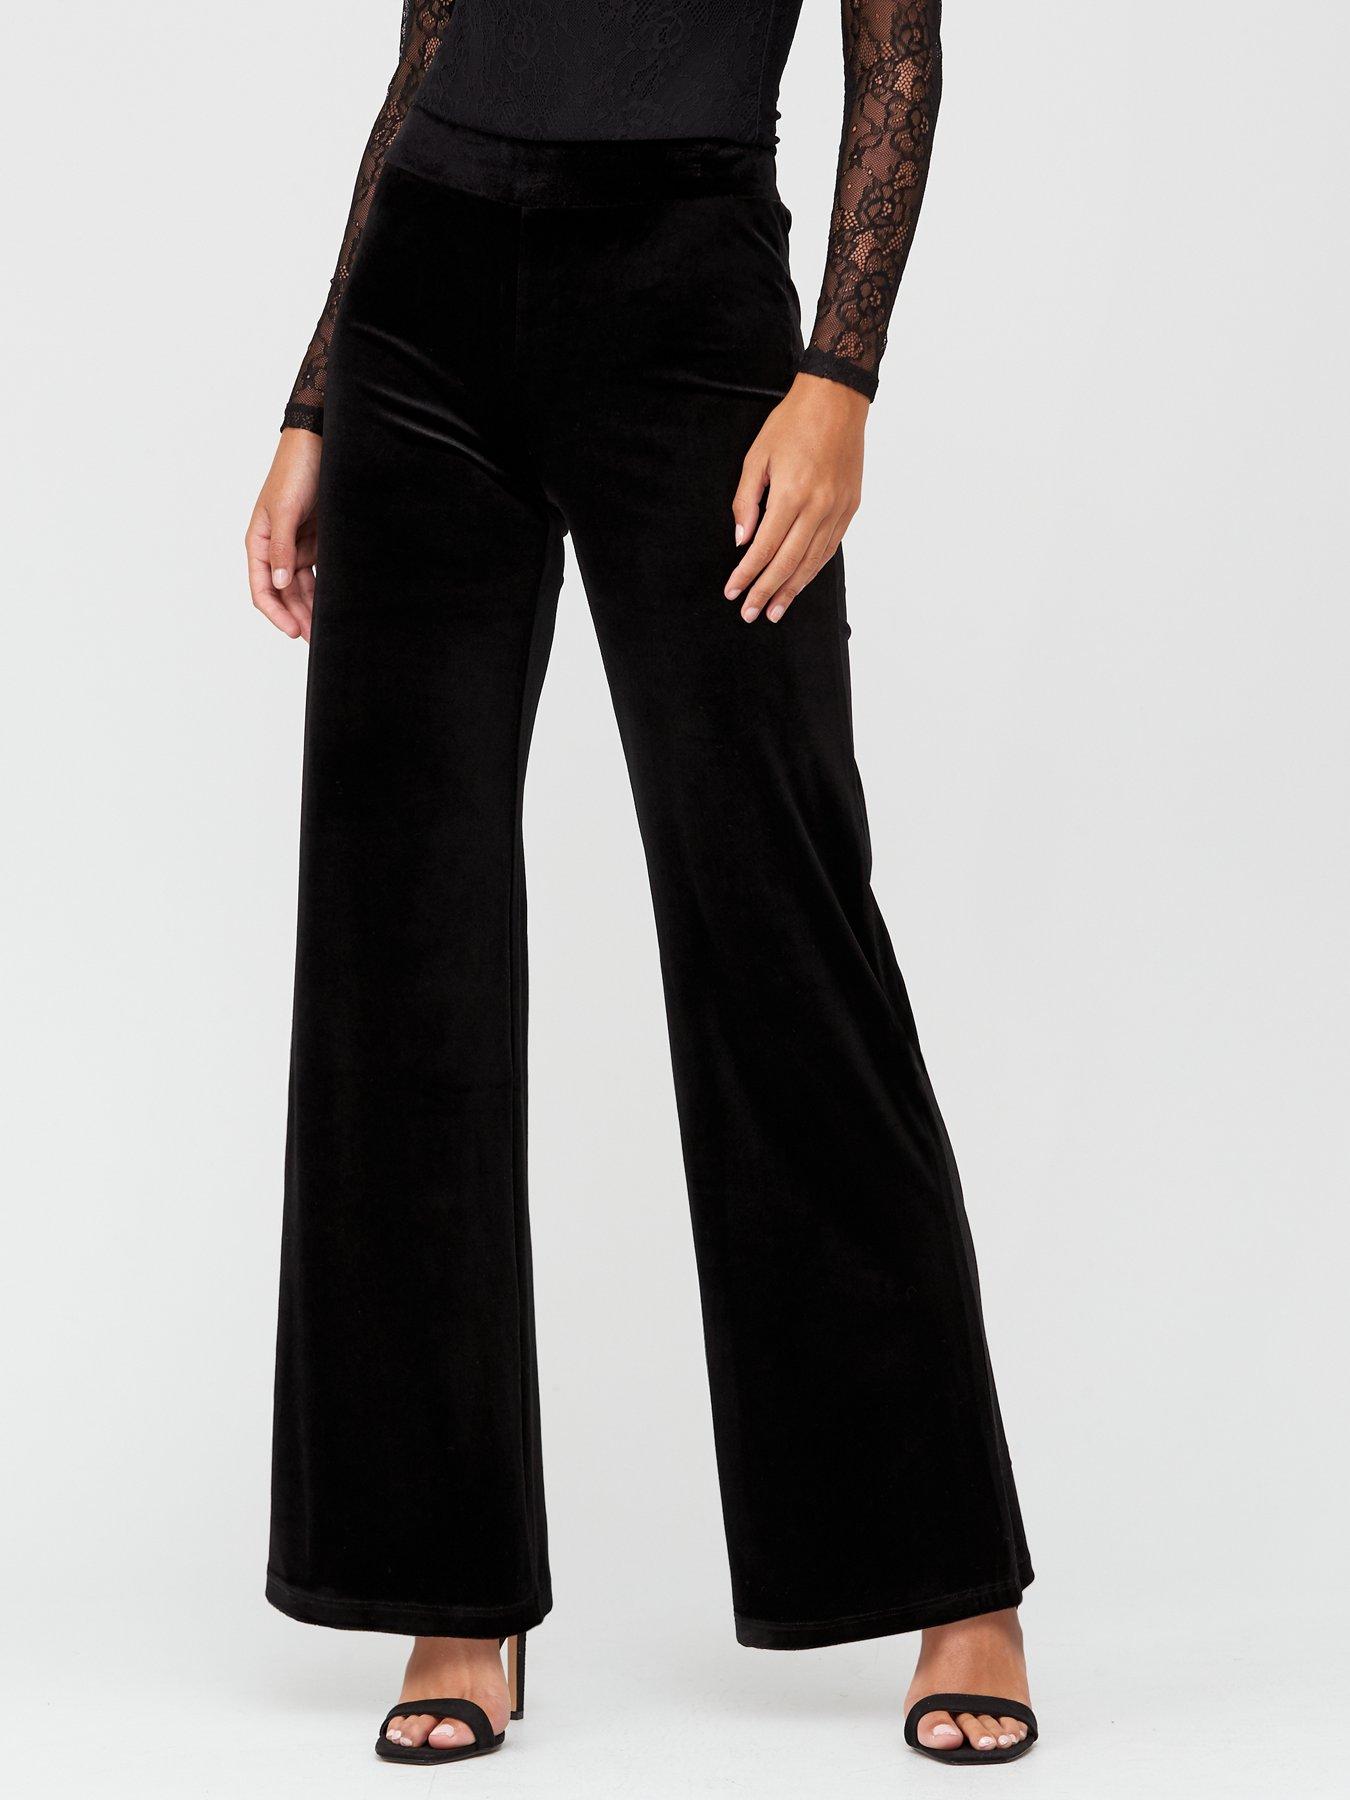 velvet black trousers